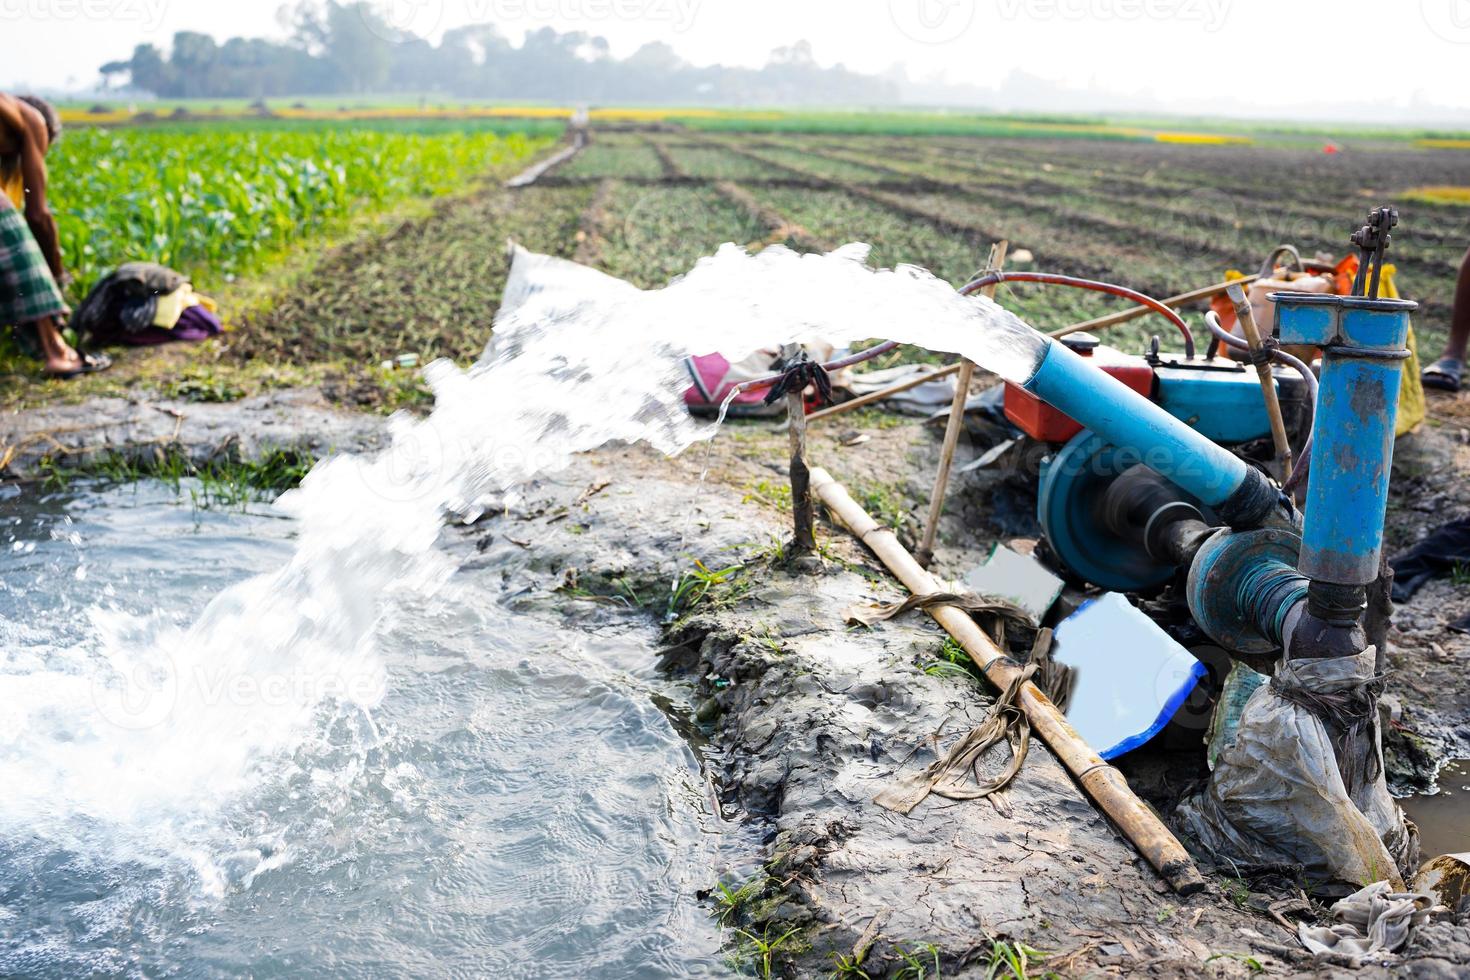 irrigatie van rijst- velden gebruik makend van pomp putten met de techniek van pompen water van de grond naar stromen in de rijst- velden. de pompen station waar water is gemotiveerd van een irrigatie kanaal. foto